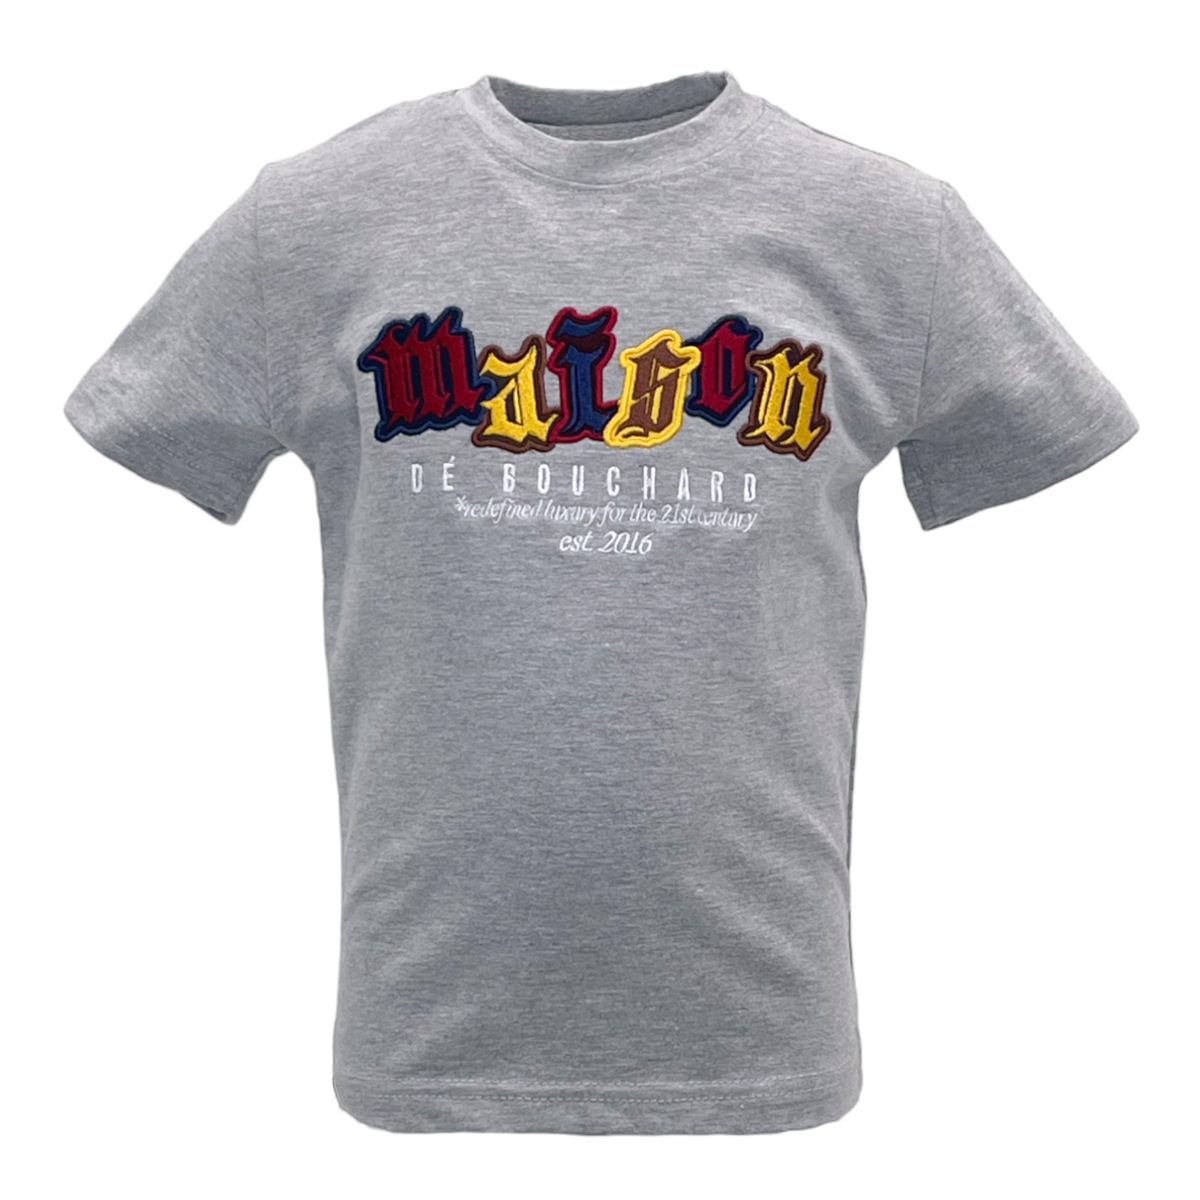 MDB Brand Kid's Established Logo T-Shirt